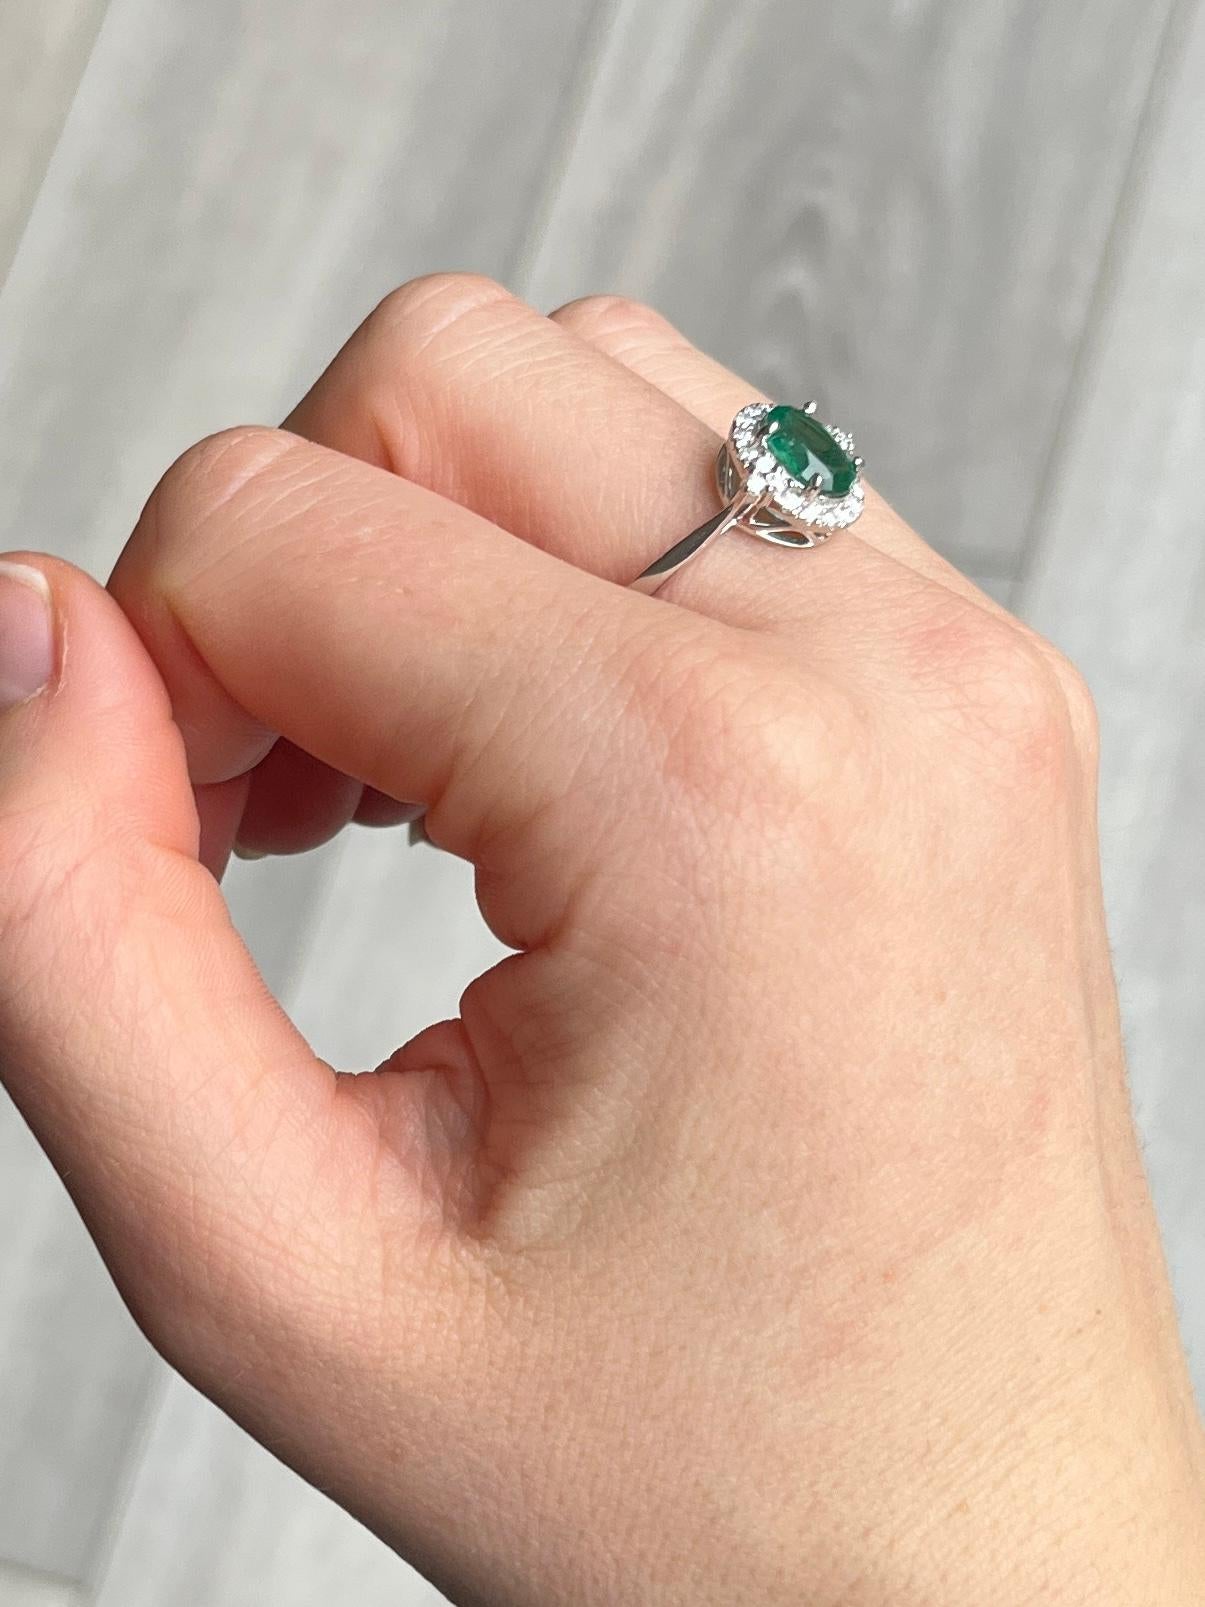 Cette magnifique bague renferme une émeraude d'un vert éclatant mesurant 1 carat. La pierre est entourée d'un halo de diamants étincelants qui totalisent 80pts. La bague est modelée en platine.

Taille de l'anneau : P 1/2 ou 8 
Dimensions de la